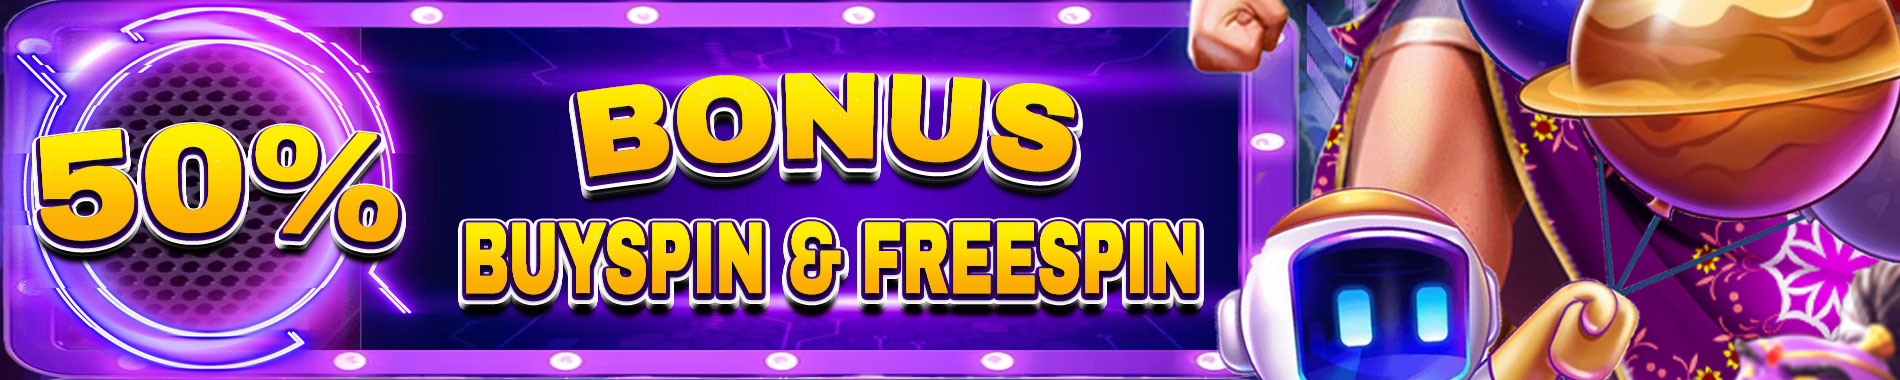 Bonus Freespin Murni 30%  Buy Freespin 20%